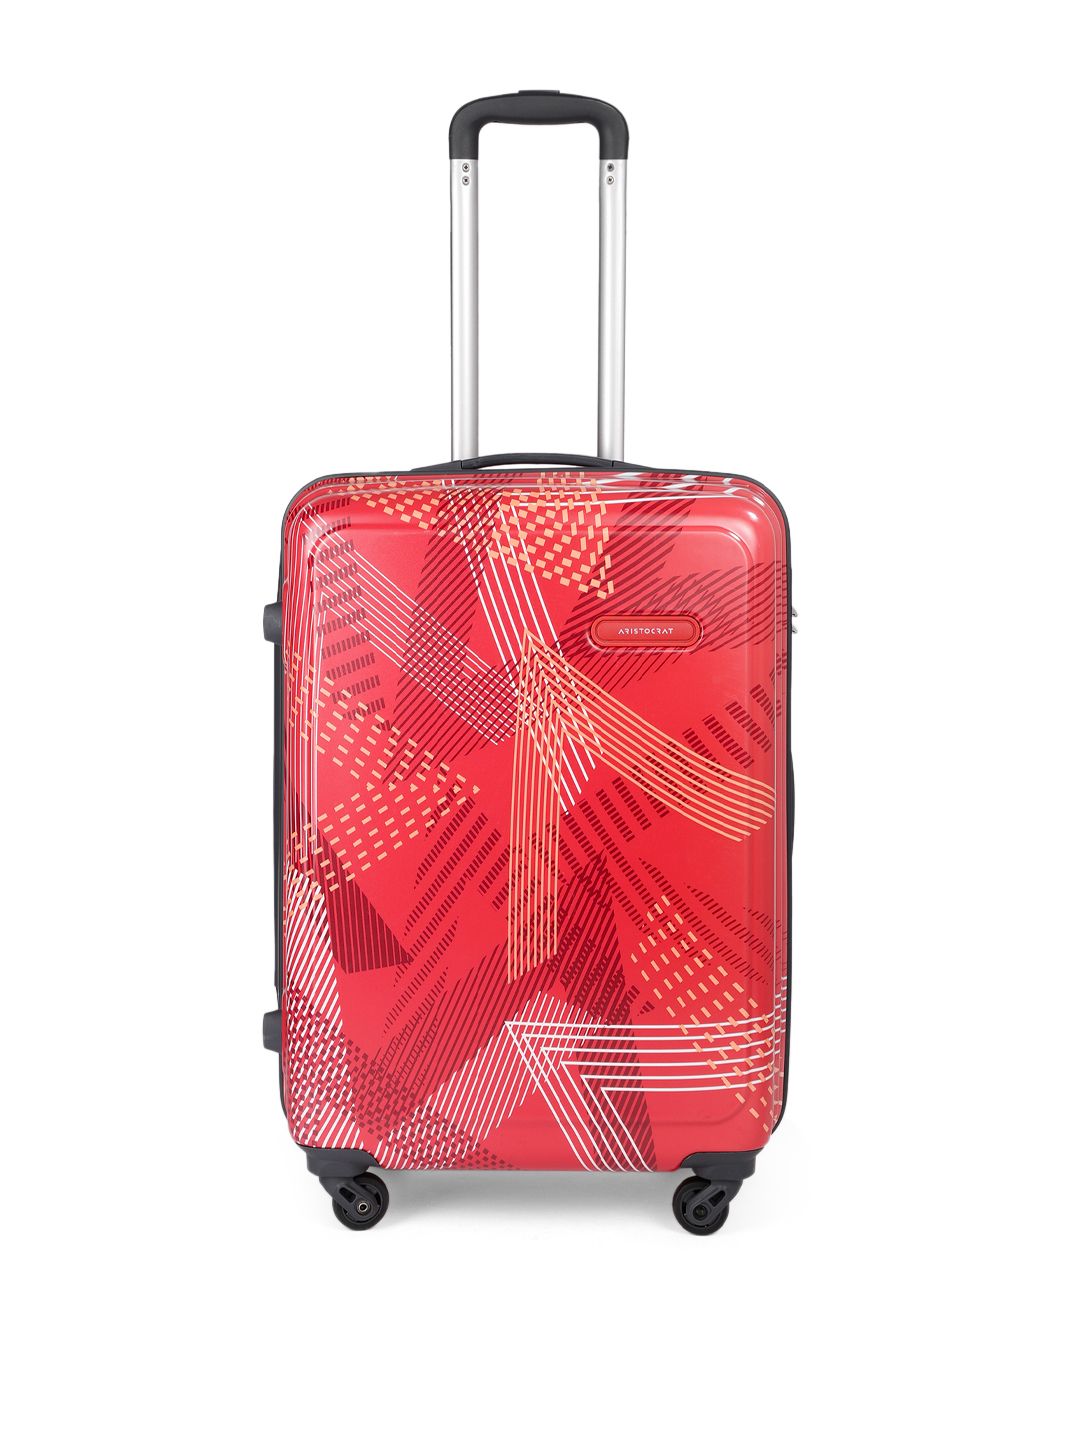 Aristocrat Red Printed Dual Edge 65 360 Medium Trolley Suitcase Price in India